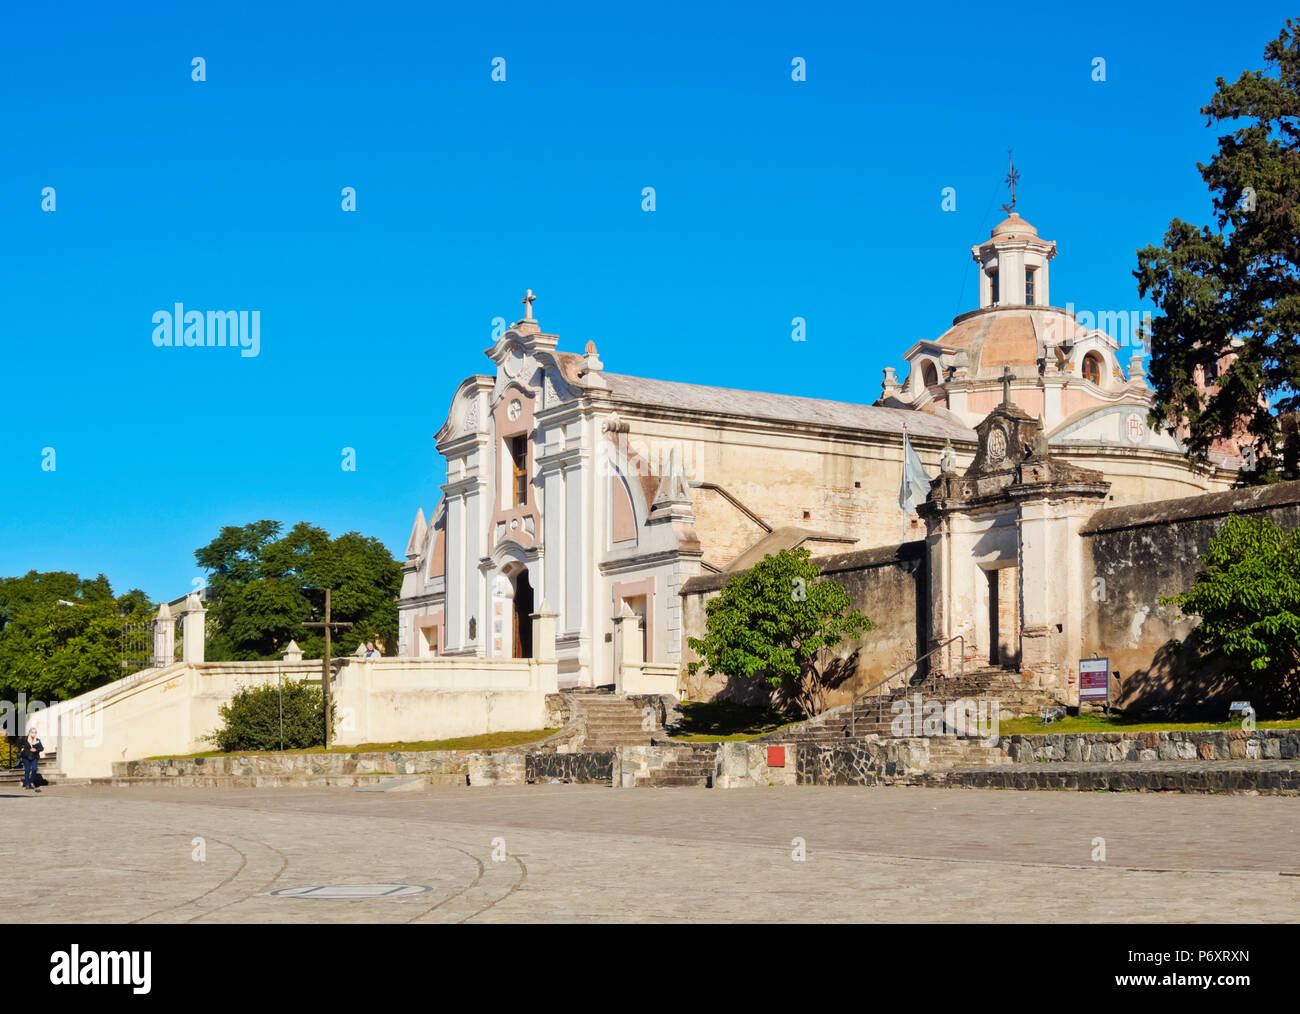 Argentina, Cordoba Province, Alta Gracia, View of the Nuestra Senora de la Merced Church, part of the Jesuit Estancia. Stock Photo